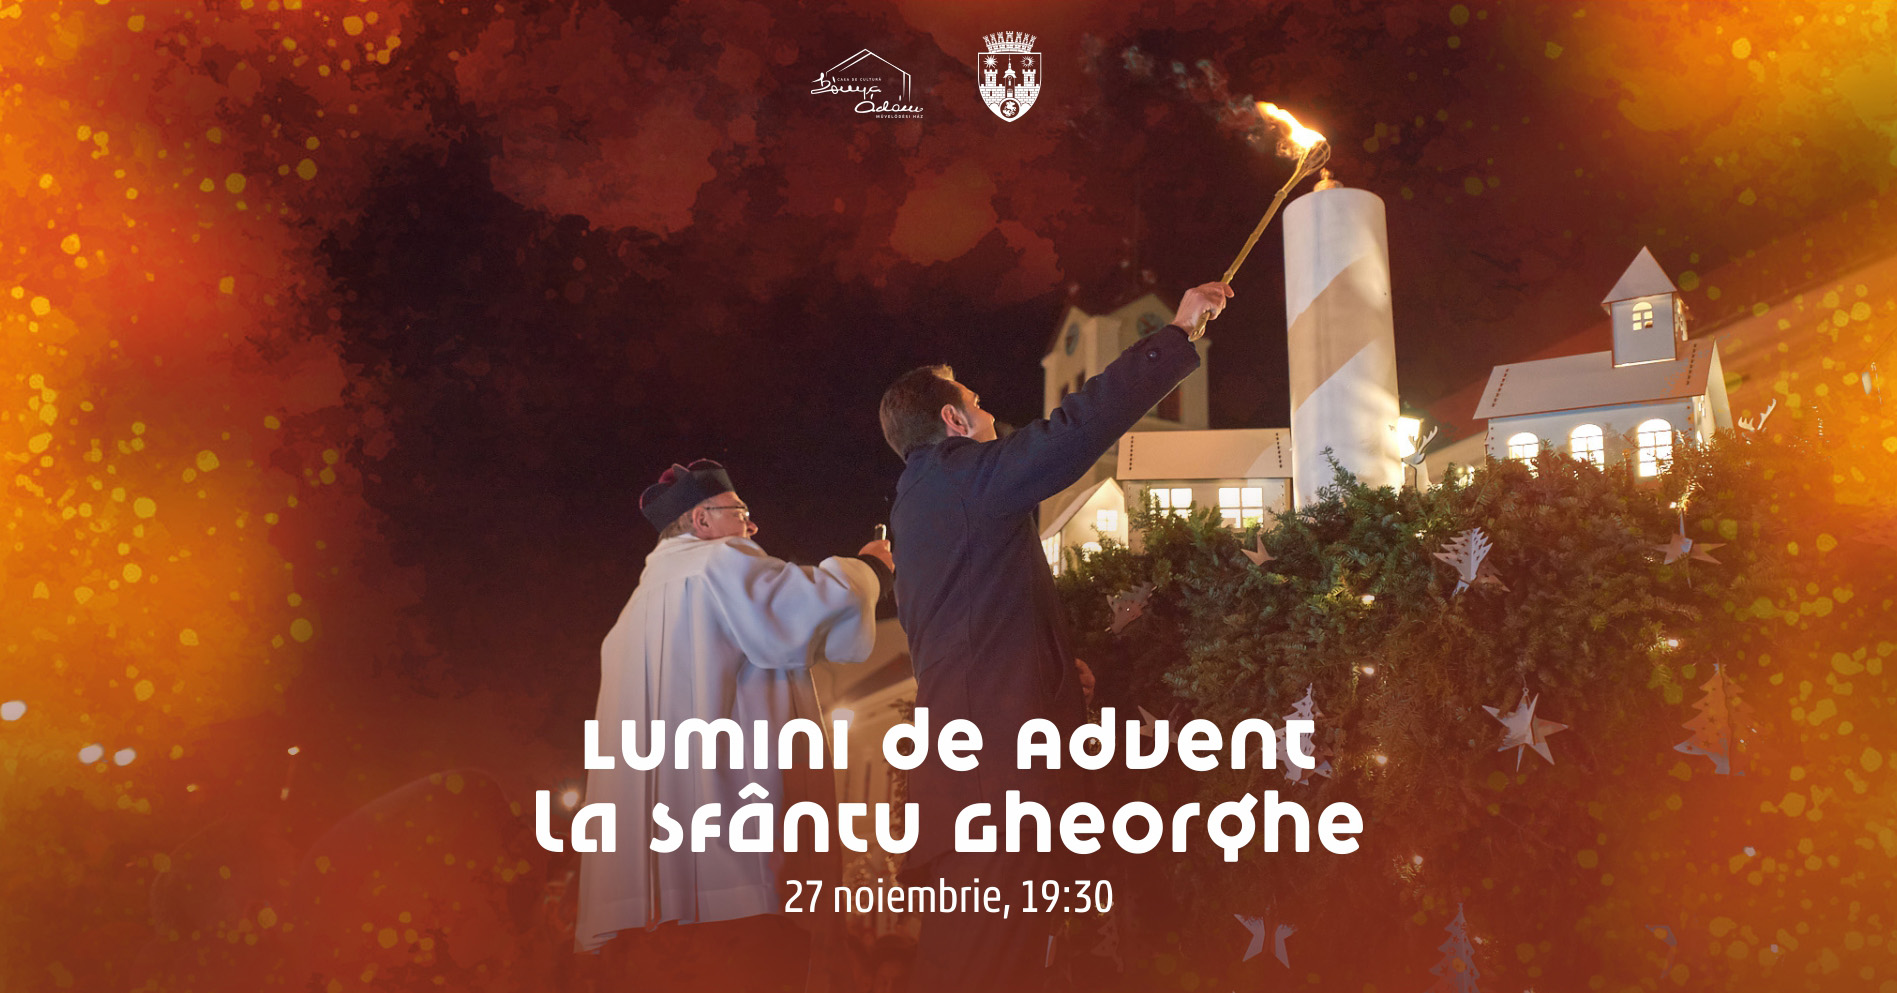 Primăria Sfântu Gheorghe vă invită la o sărbătoare a comunității: aprinderea primei lumânări de Advent în Piața Centrală